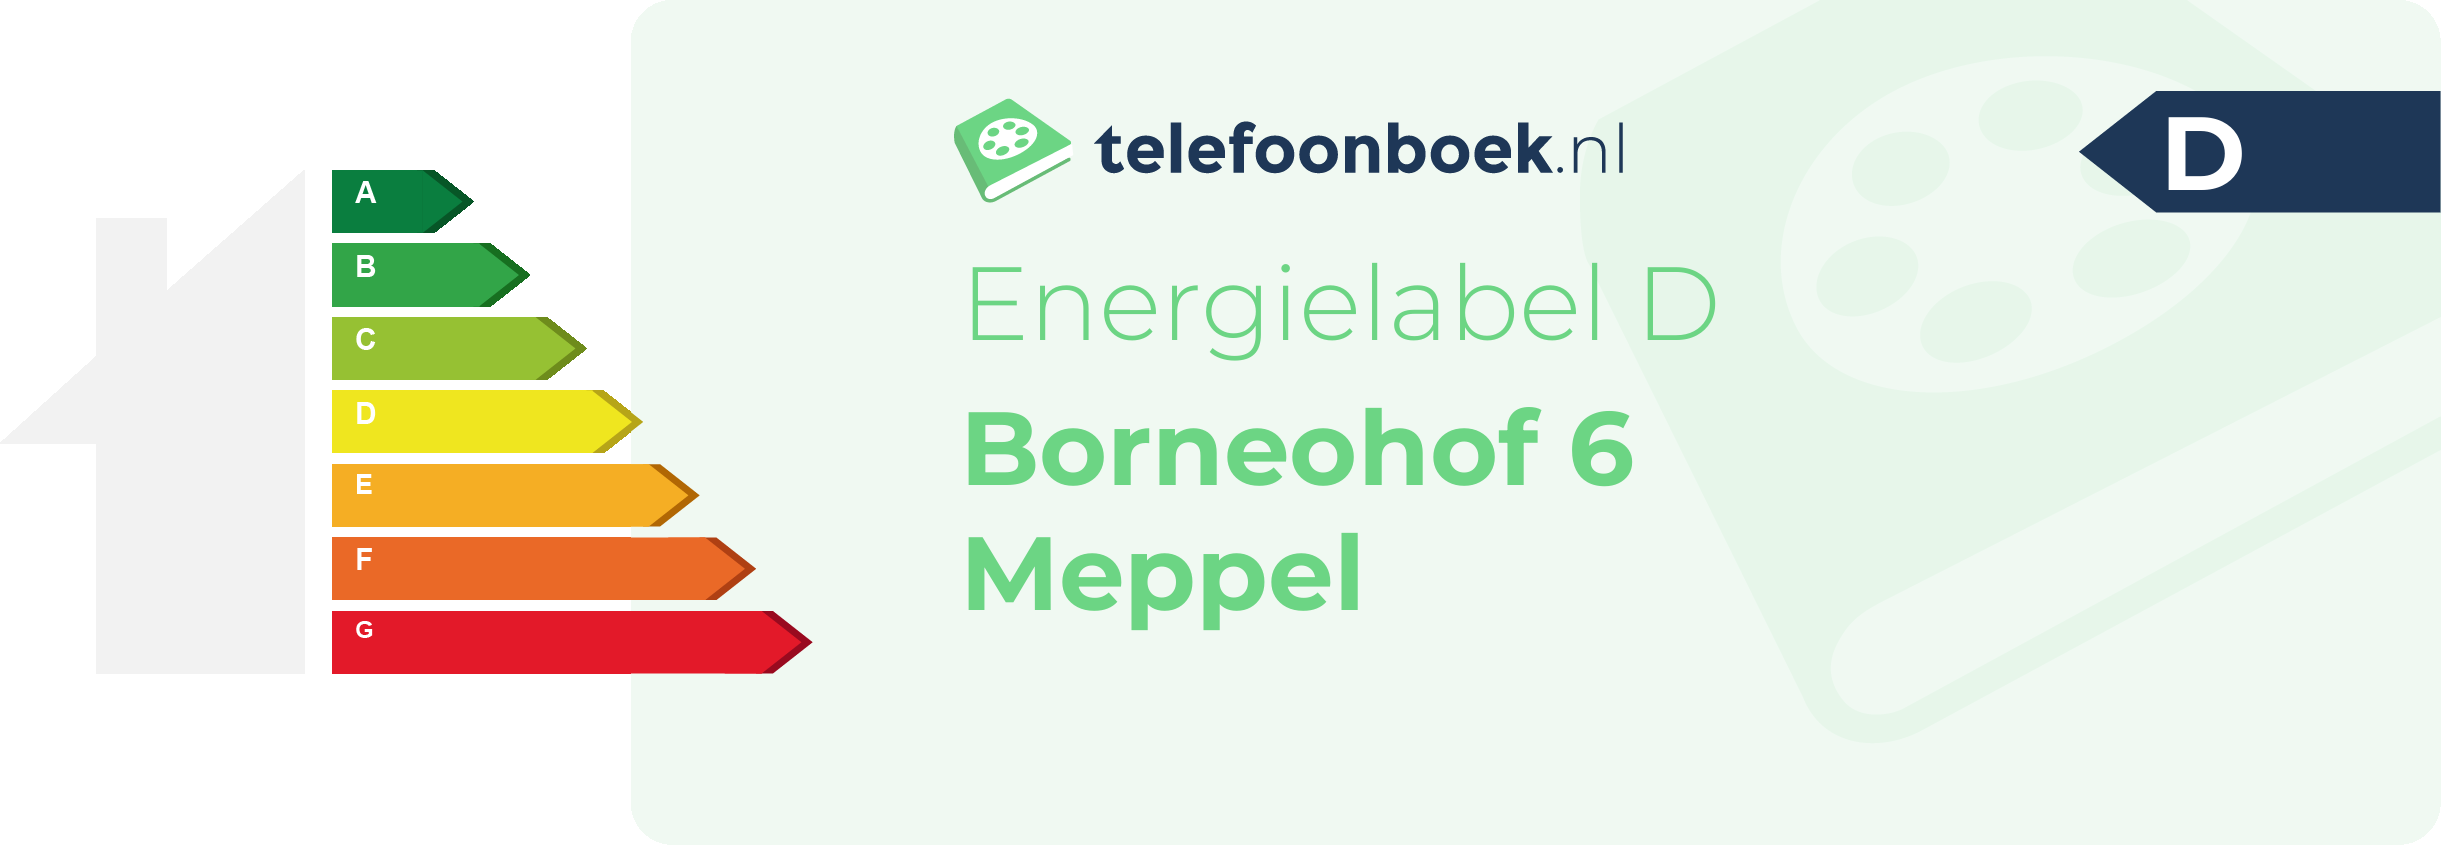 Energielabel Borneohof 6 Meppel